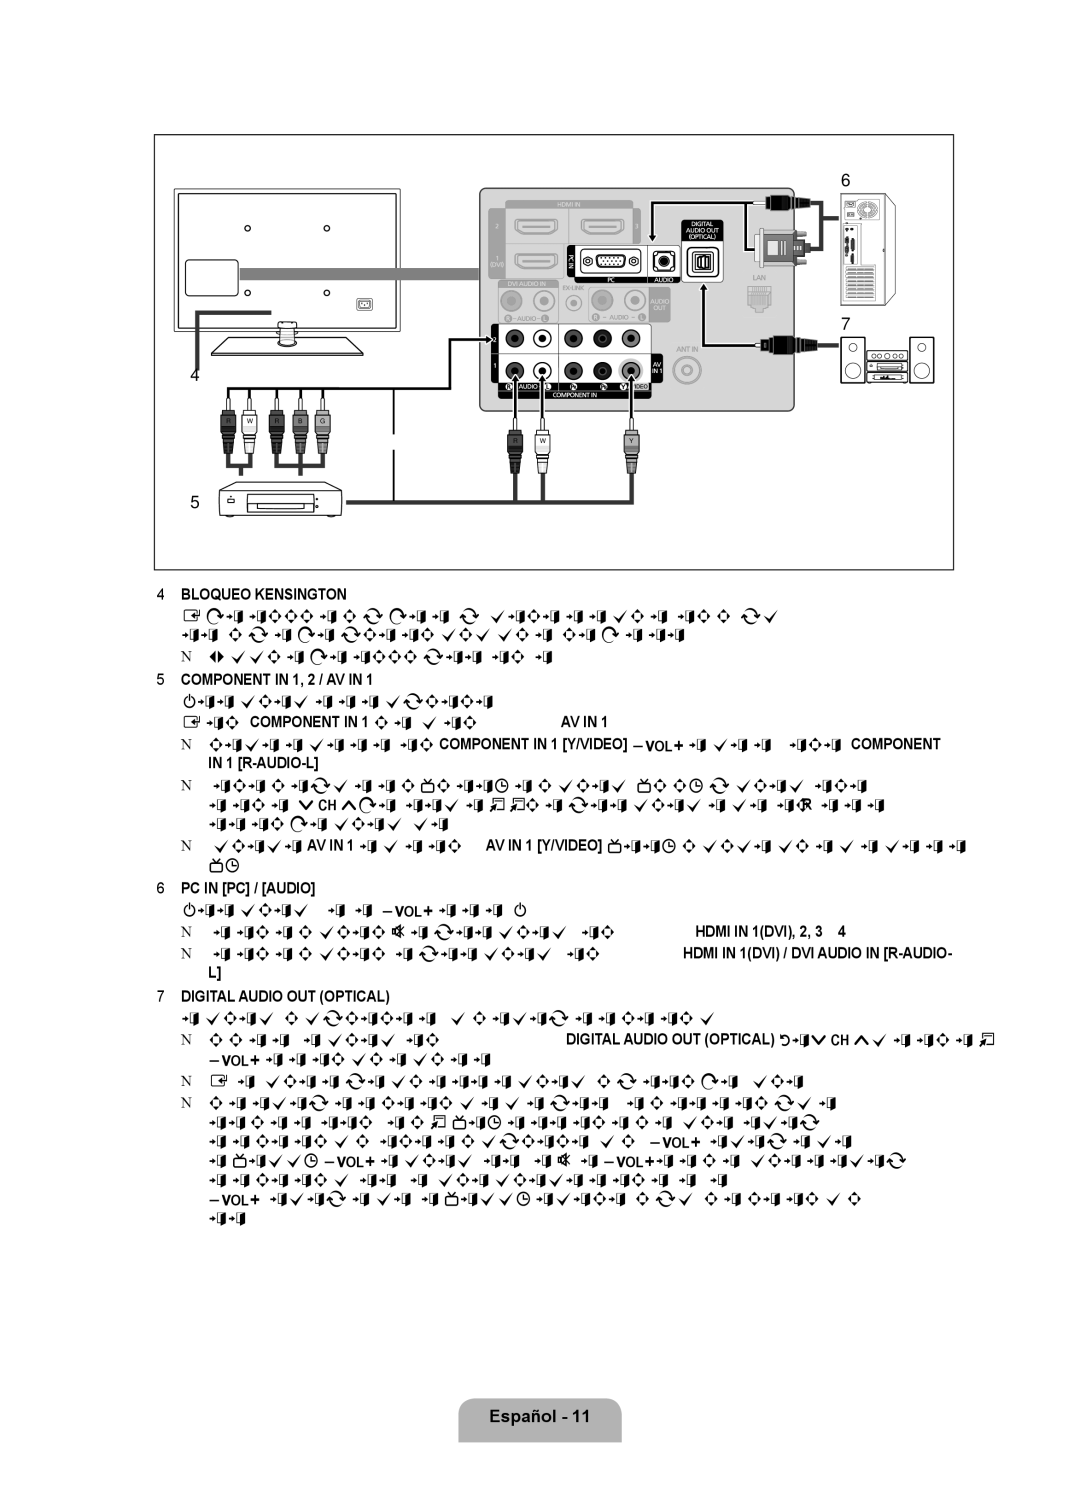 Samsung LN6B60 user manual Bloqueo Kensington, Component in 1, 2 / AV 